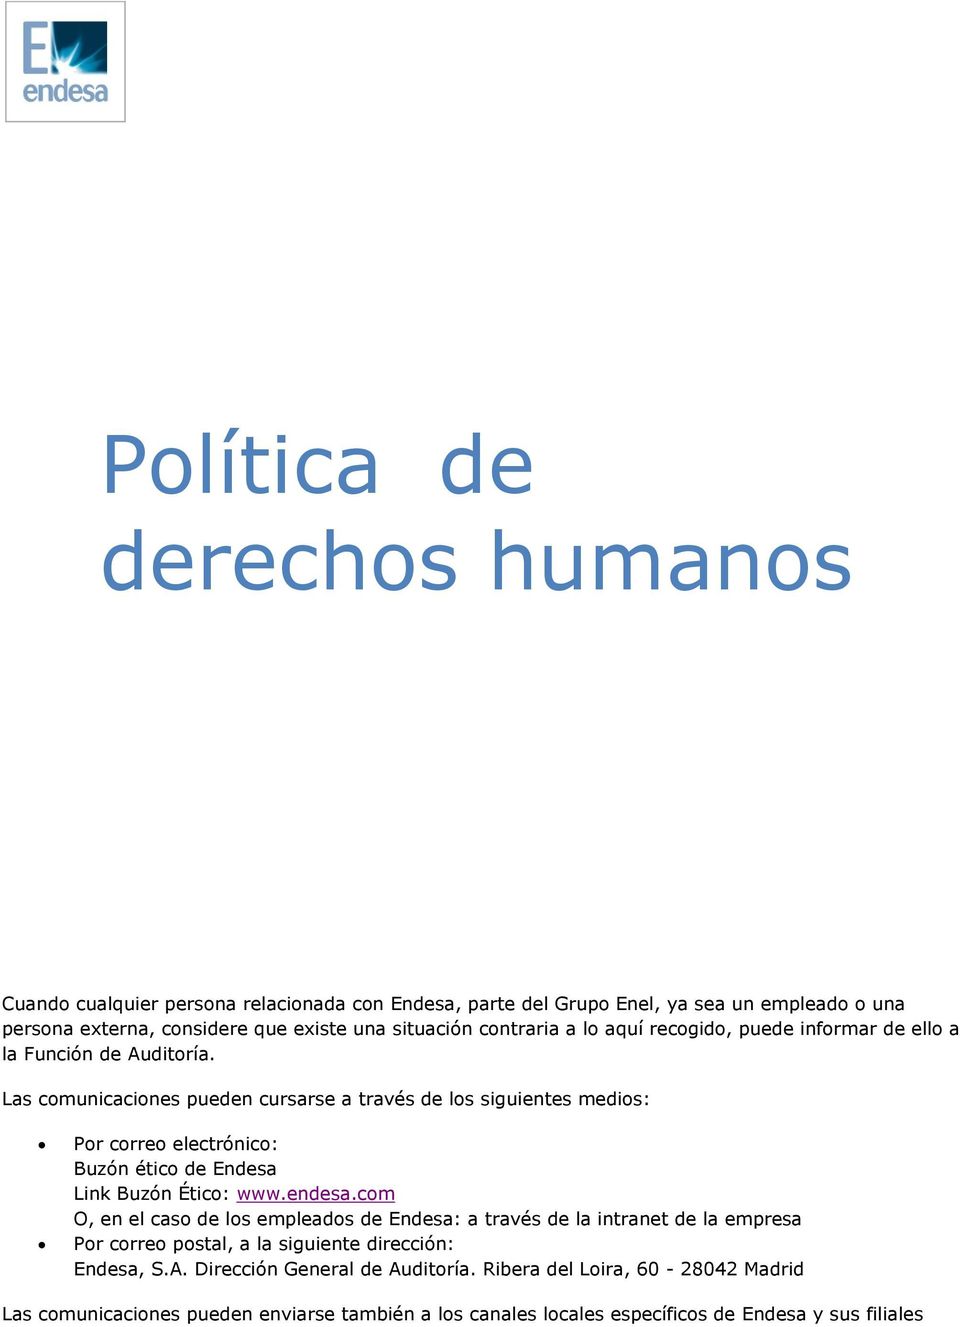 Las comunicaciones pueden cursarse a través de los siguientes medios: Por correo electrónico: Buzón ético de Endesa Link Buzón Ético: www.endesa.